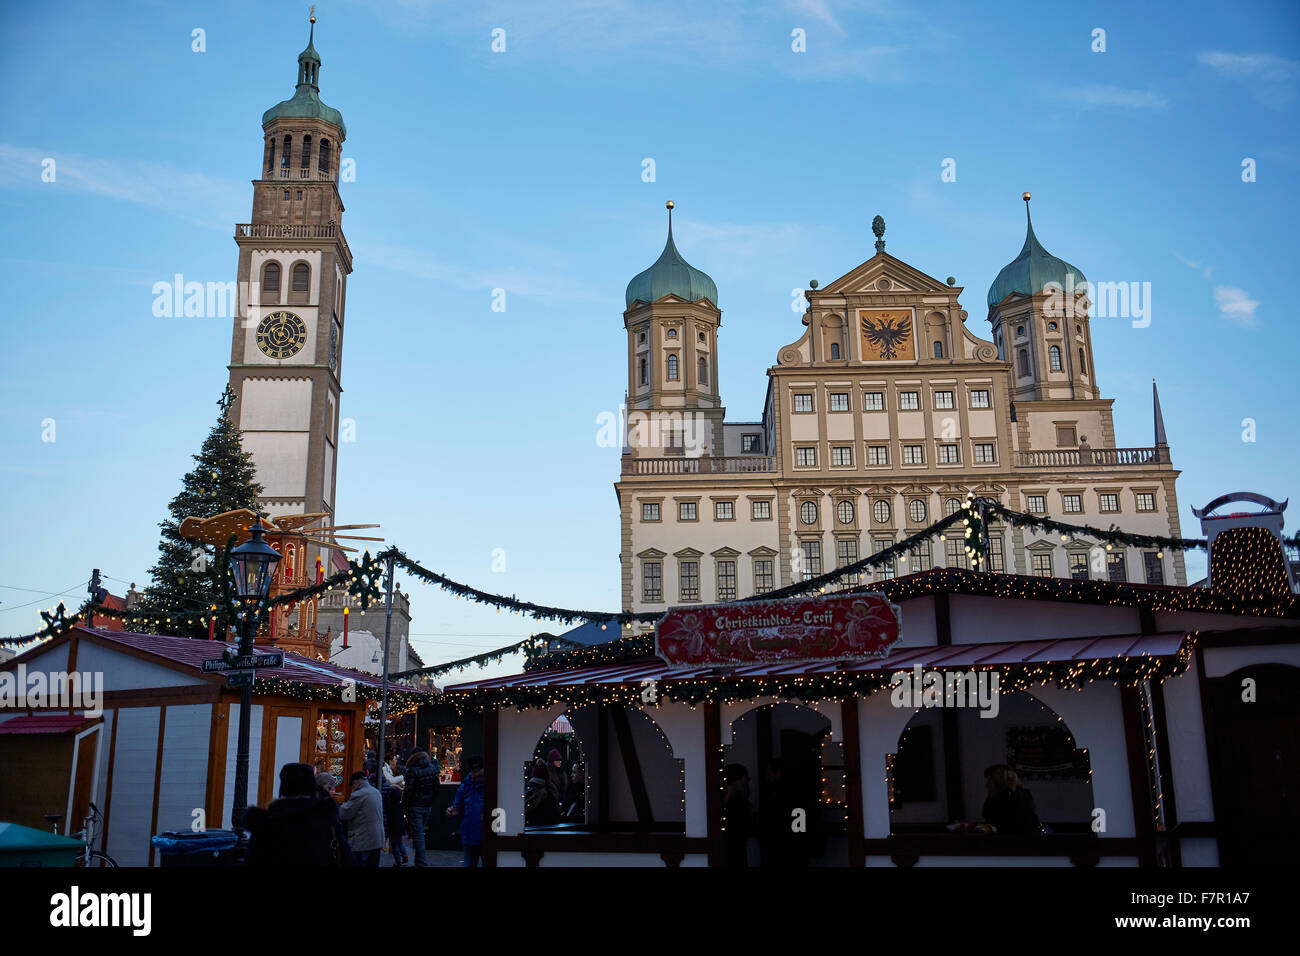 Marché de Noël Augsburg, Rathausplatz, avec l'Hôtel de Ville et Perlachturm, Augsbourg, Bavière, Allemagne, Banque D'Images